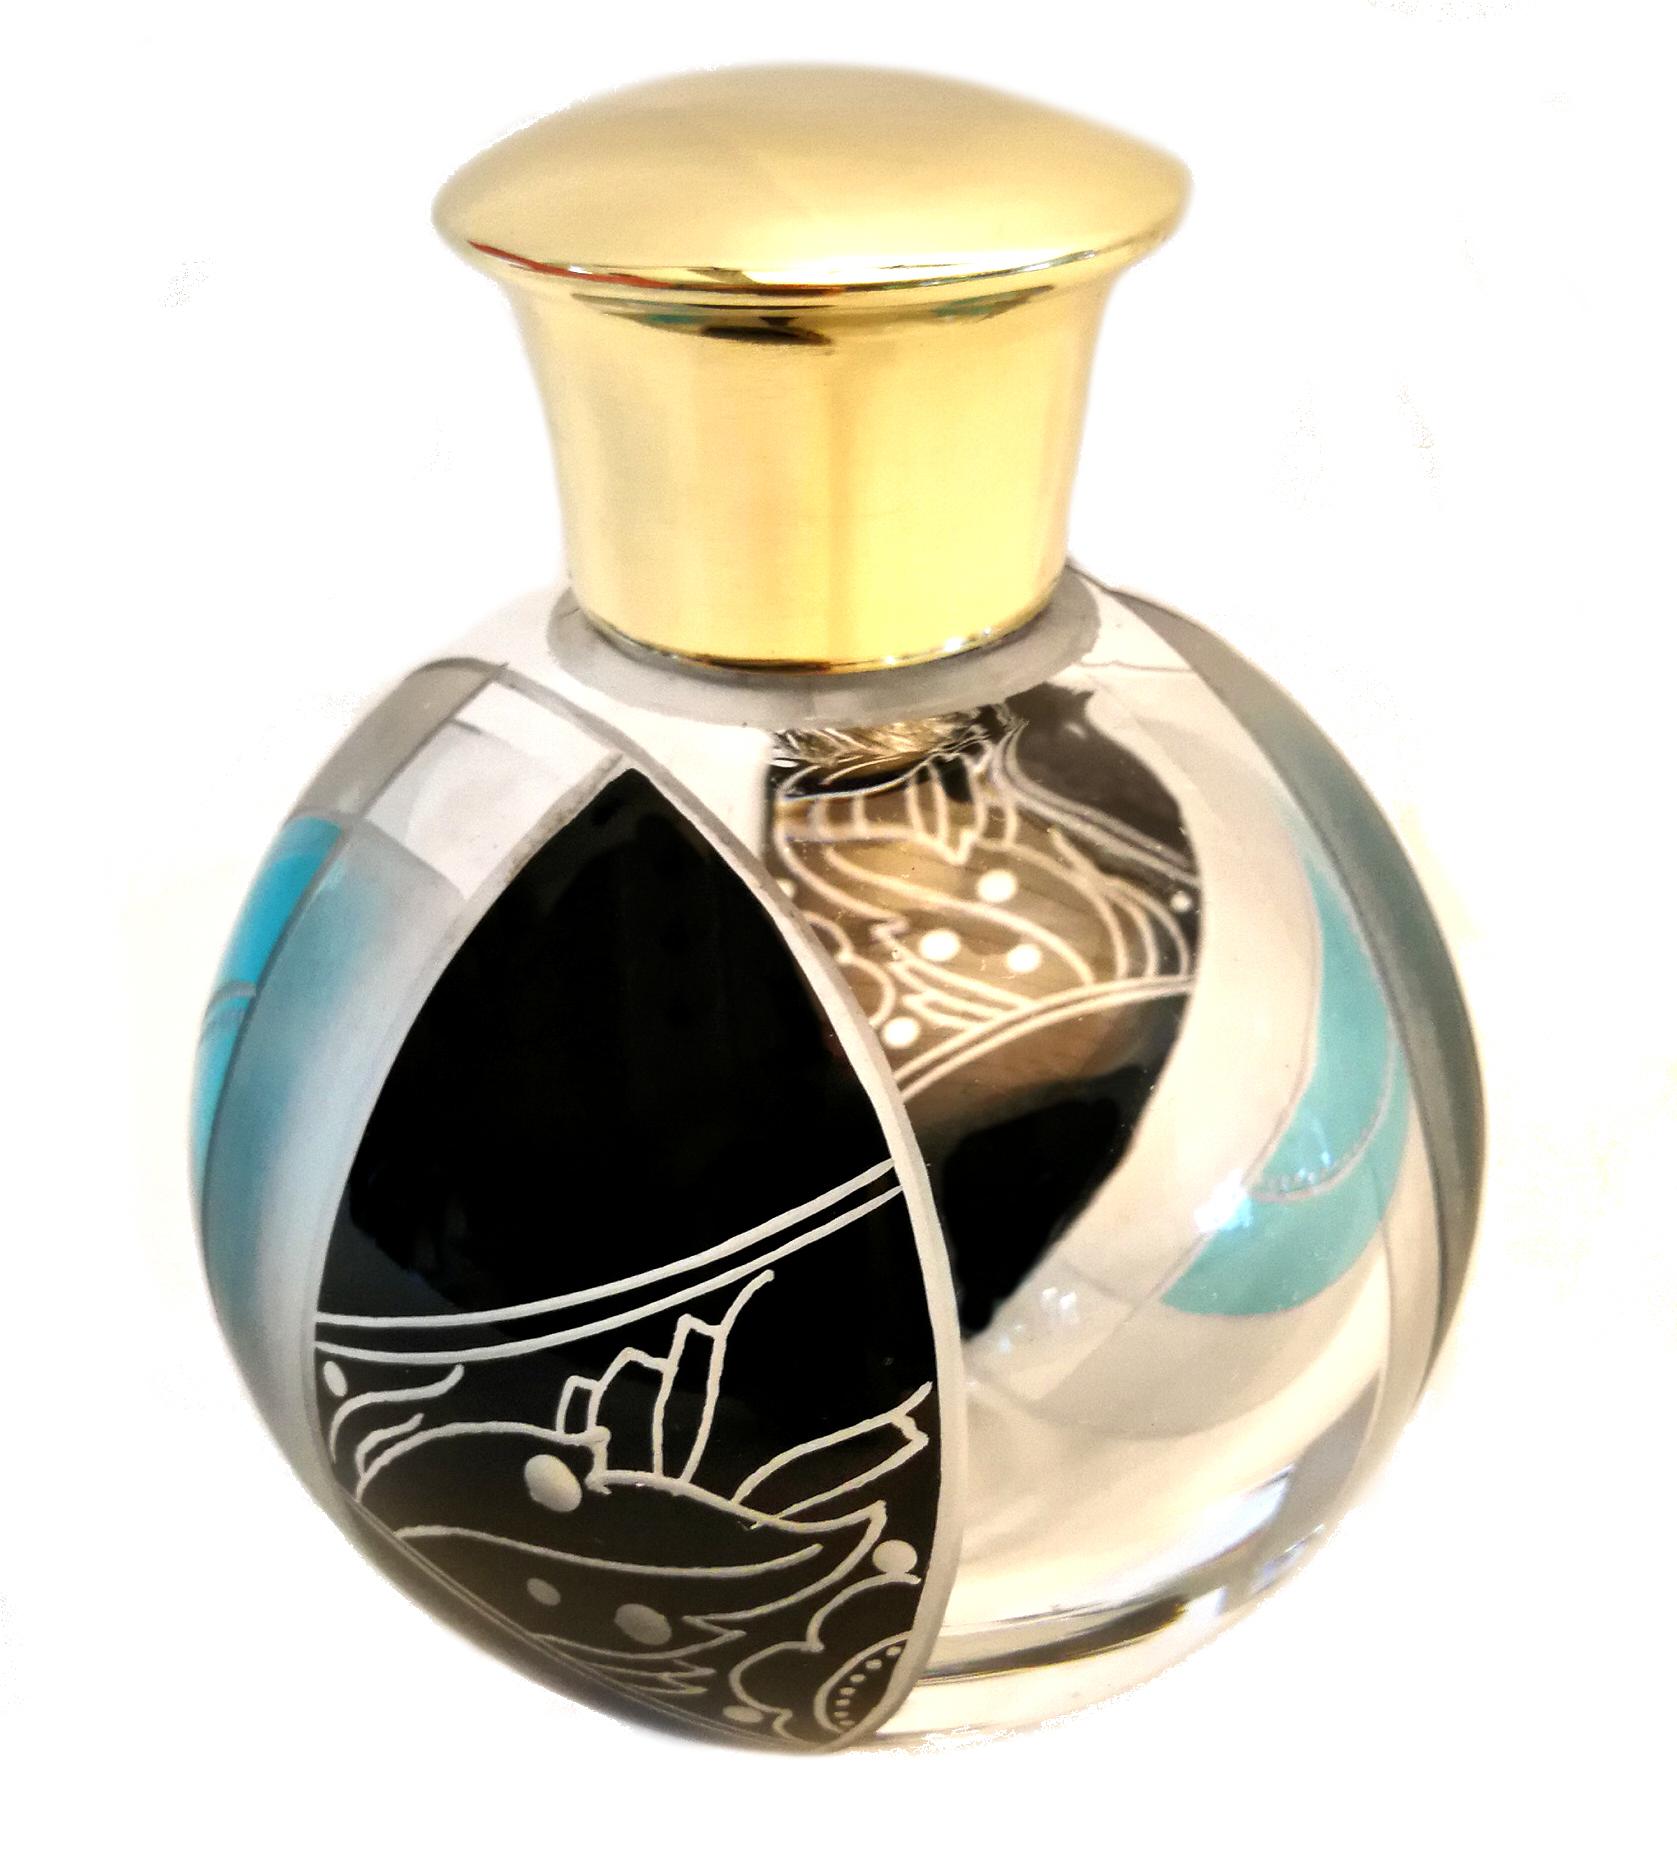 Czech Art Deco Perfume Bottle by Karl Palda